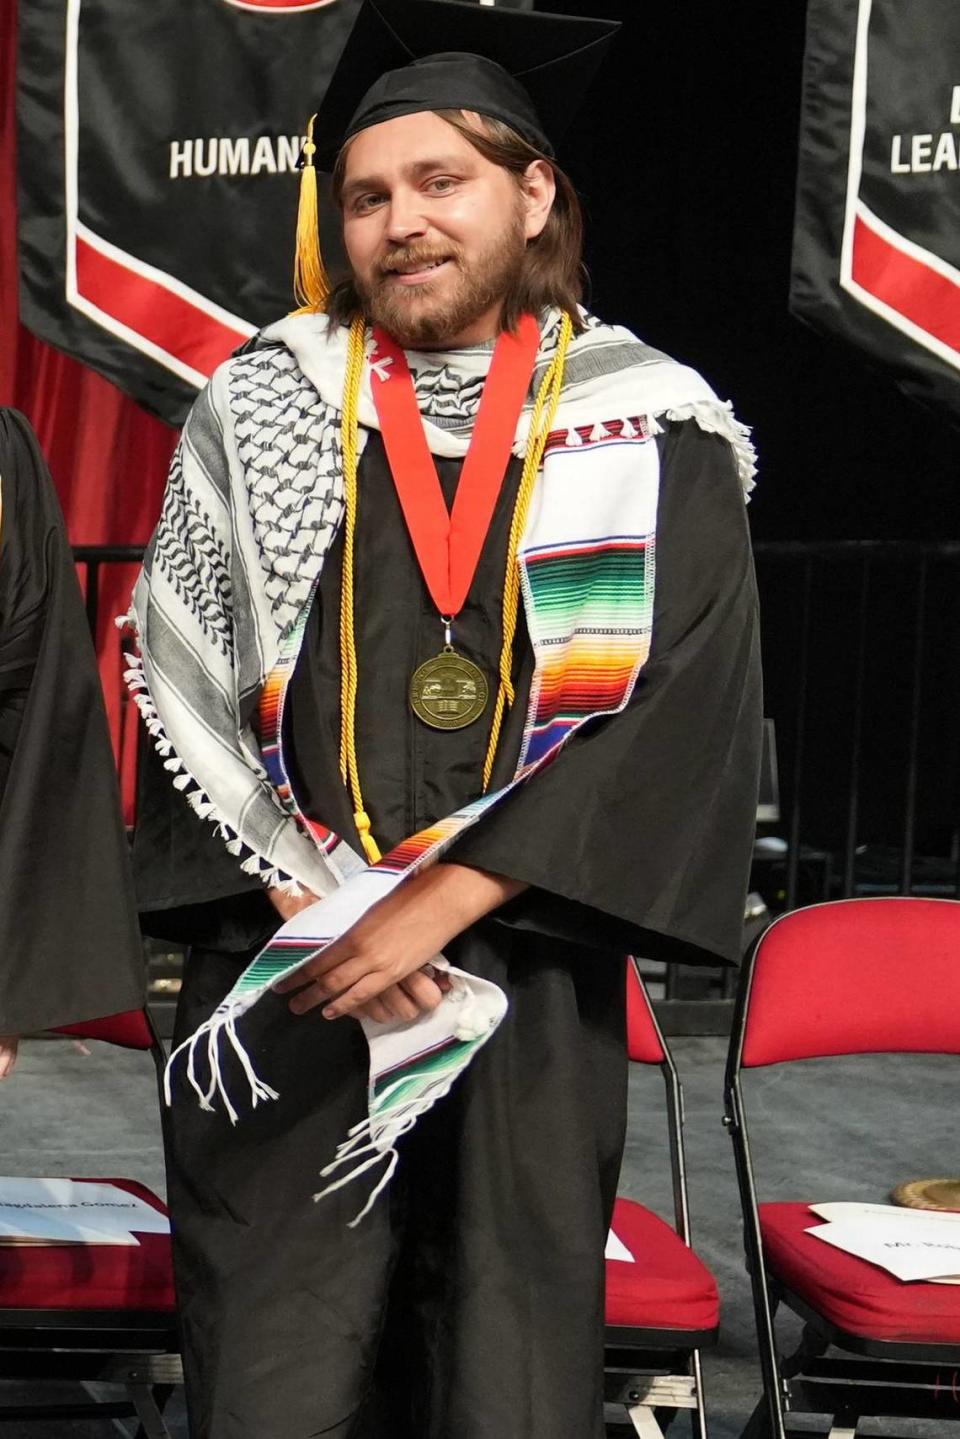 Gavin ‘Gavino’ Garza se graduó en Fresno City College en mayo como ganador del Dean's Medallion of Excellence Award de este año para la División de Humanidades.